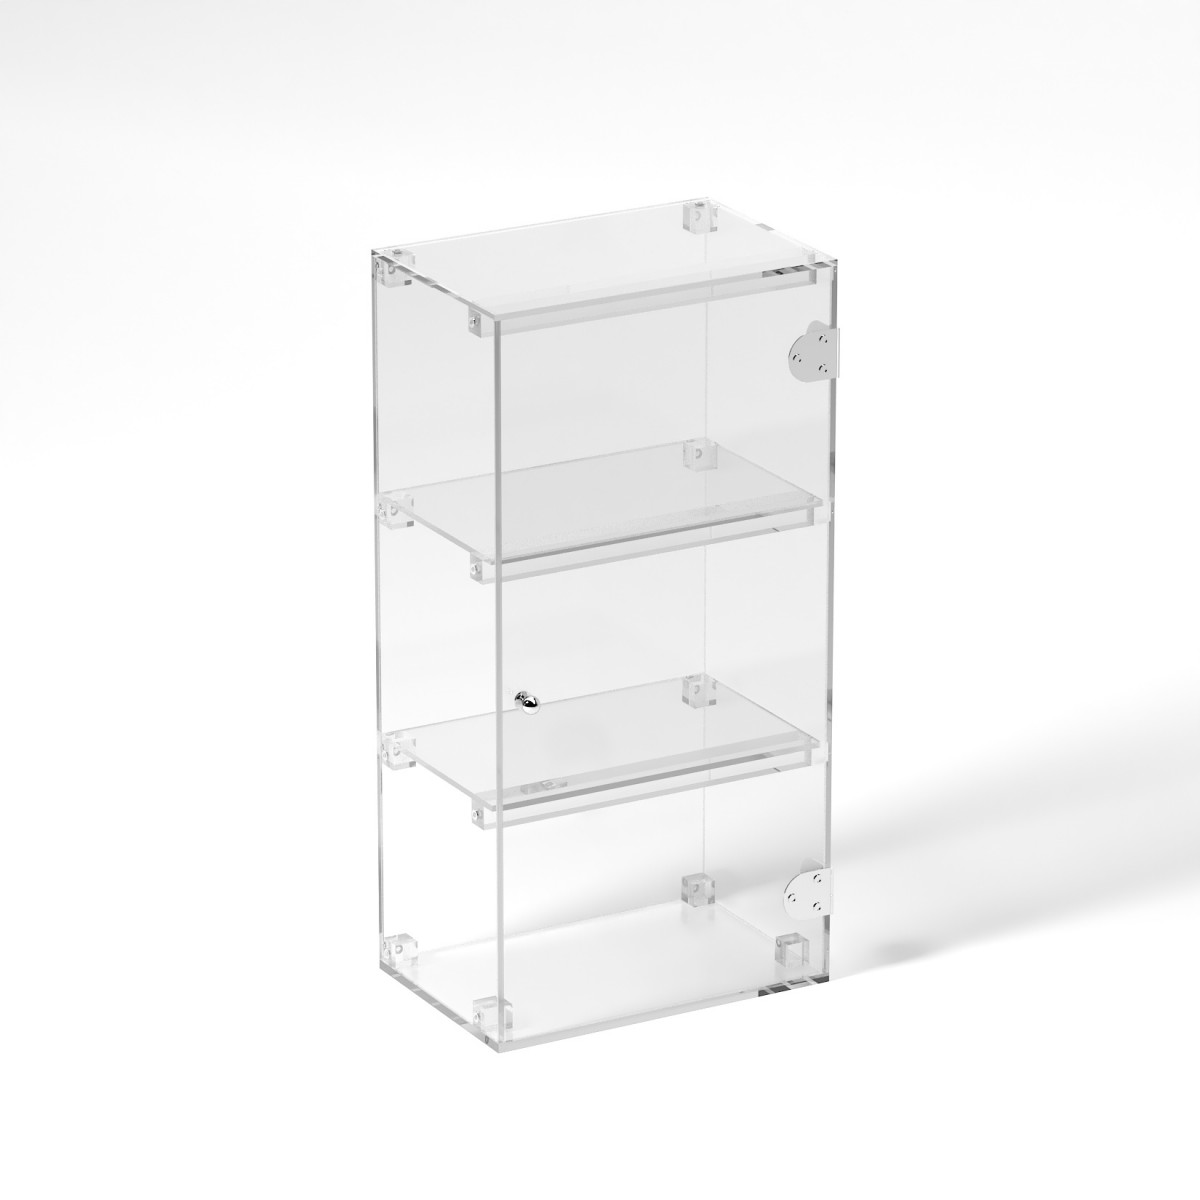 E-802 VET - Ampia vetrina espositiva in plexiglass trasparente a 3 ripiani - Misure: 30 x 20 x h60 cm